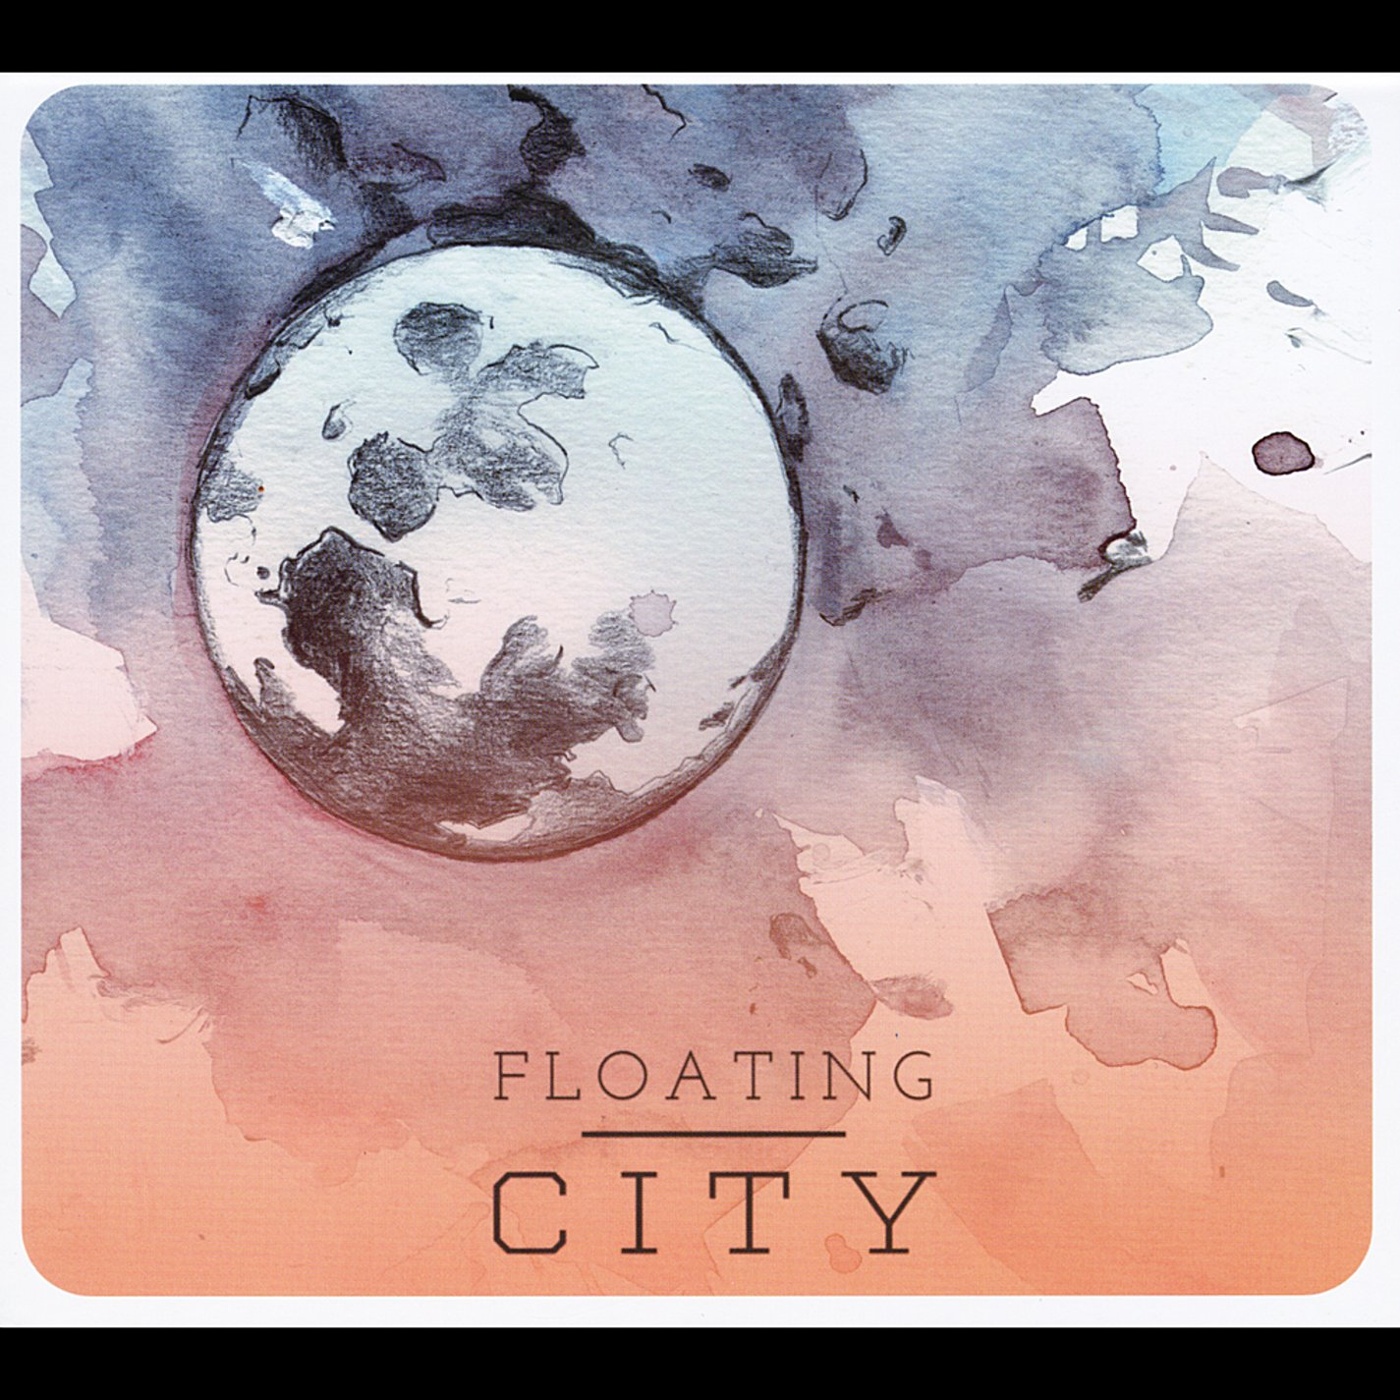 Floating over. Eloy Floating.